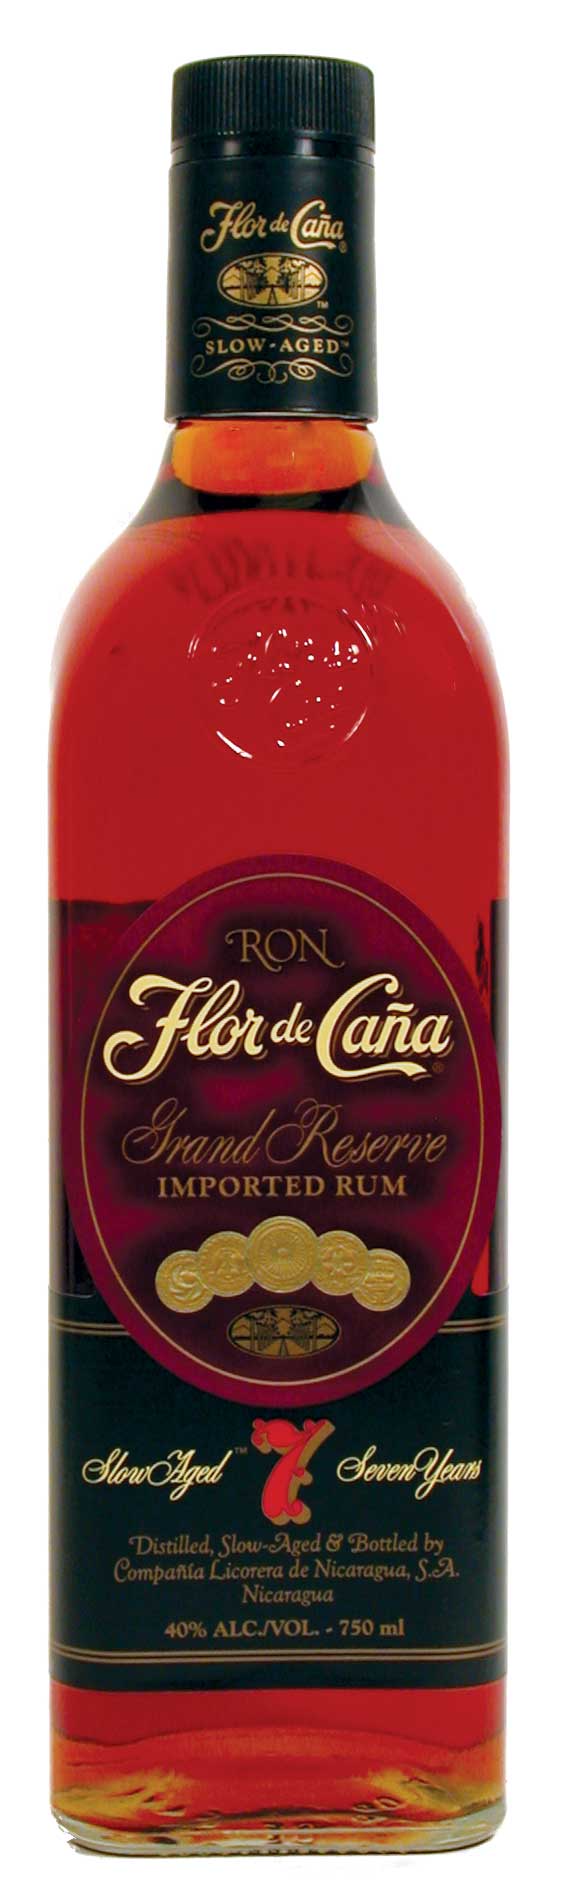  Flor de Caña 7 Year Rum